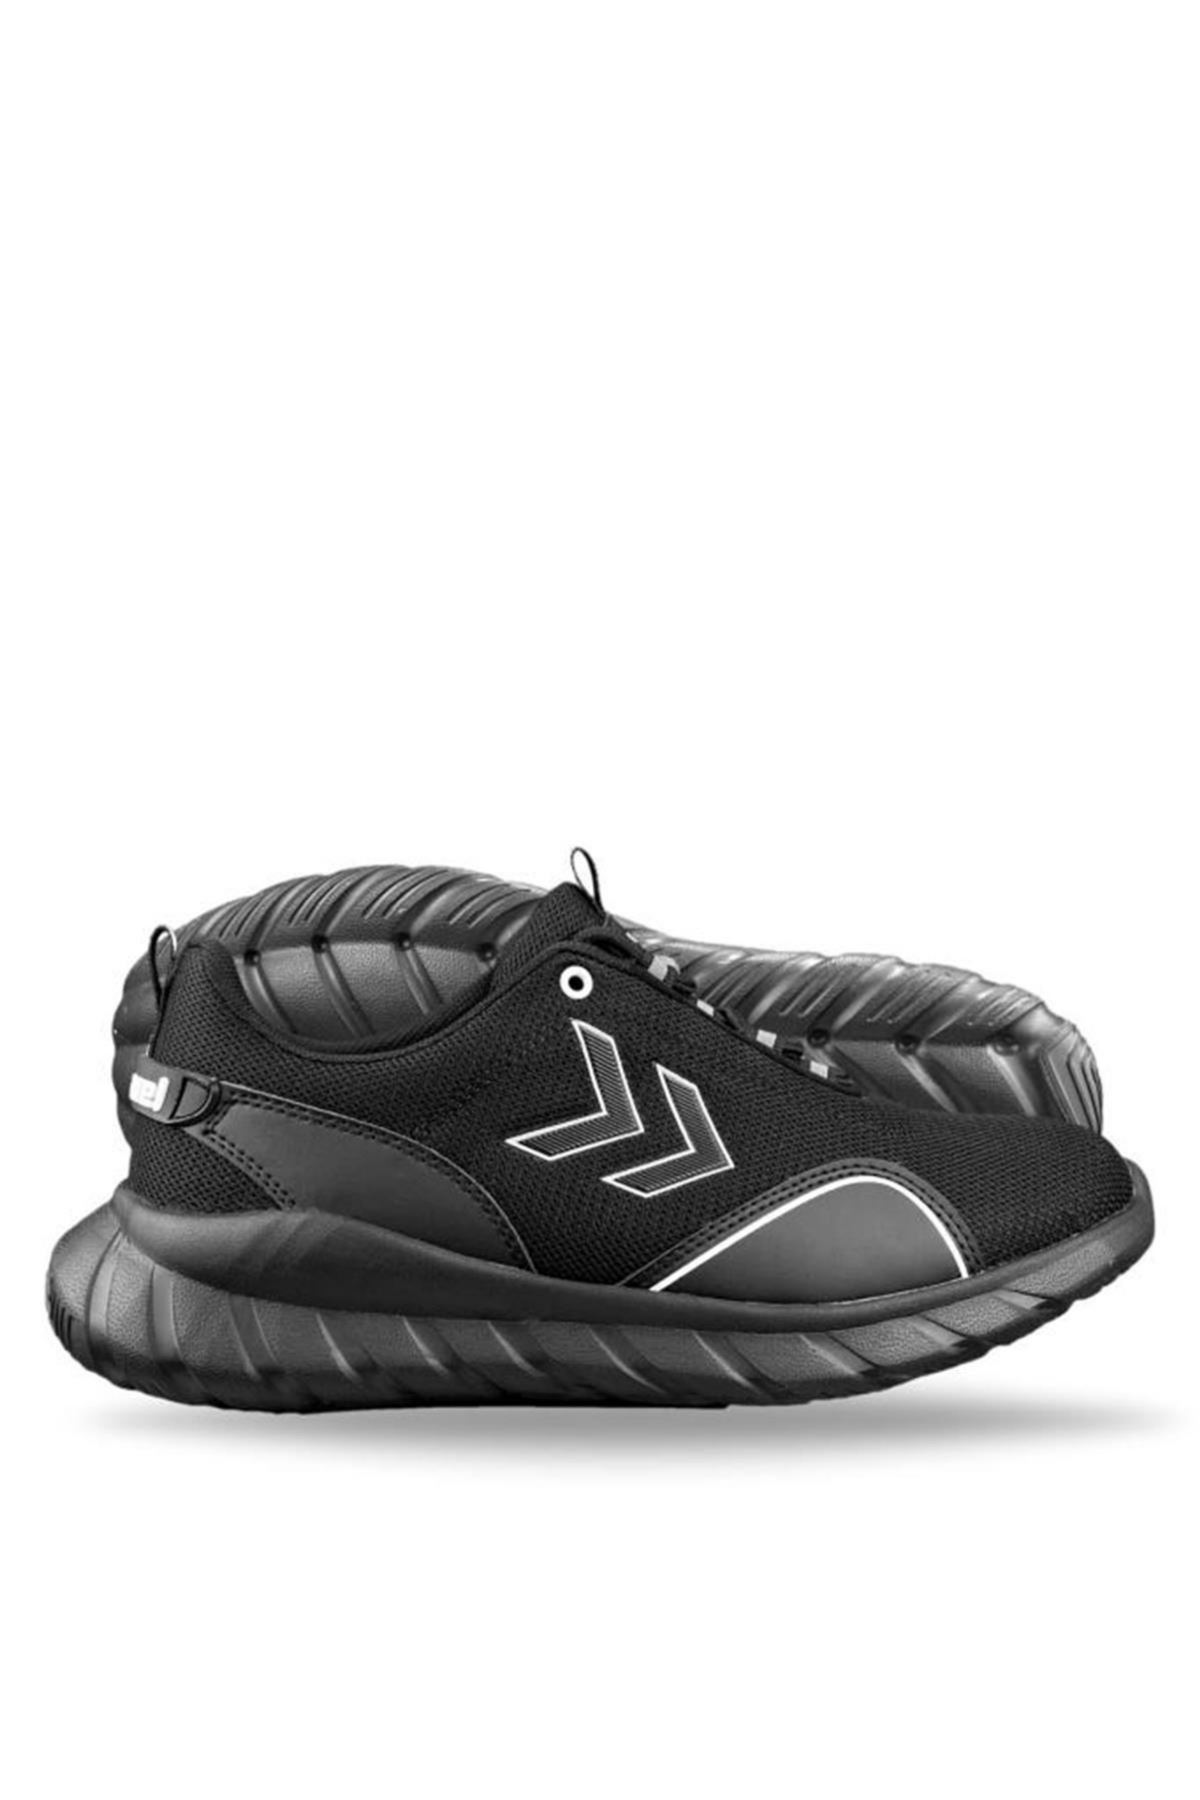 Hummel Gaudi Erkek Siyah Spor Ayakkabı - 900144-2042